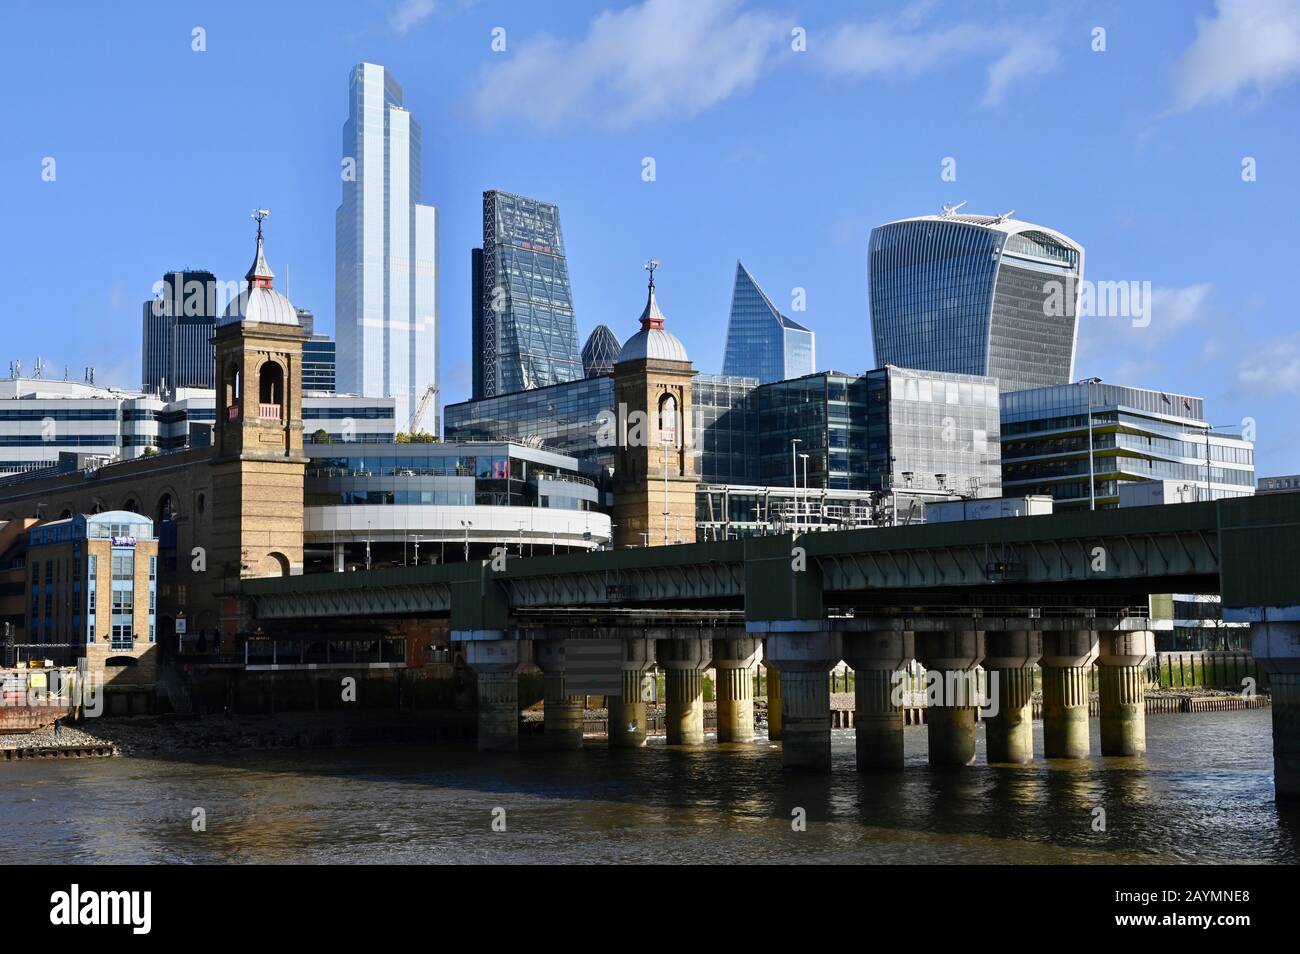 Vue sur la gare de Cannon Street et le pont ferroviaire avec aménagement moderne des bureaux derrière. Tamise, City Of London, Londres. ROYAUME-UNI Banque D'Images